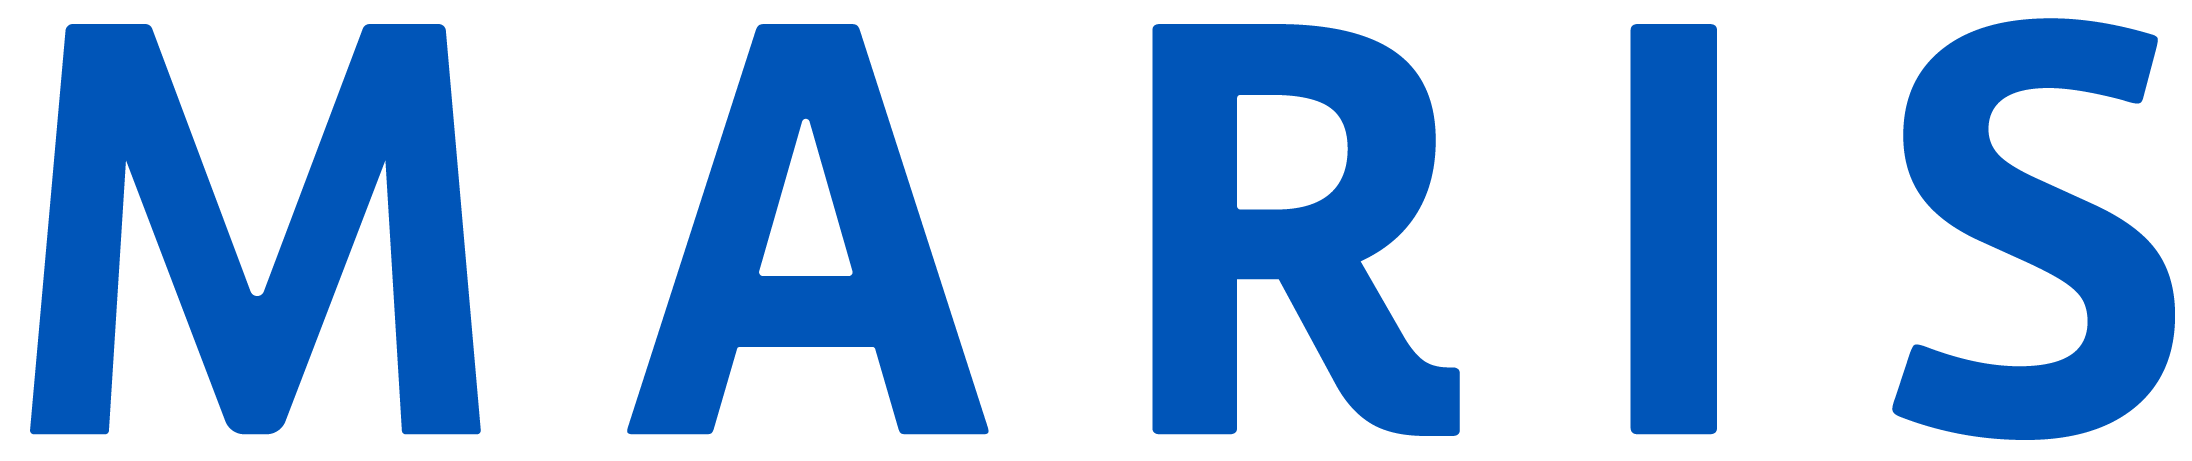 MARIS Logo